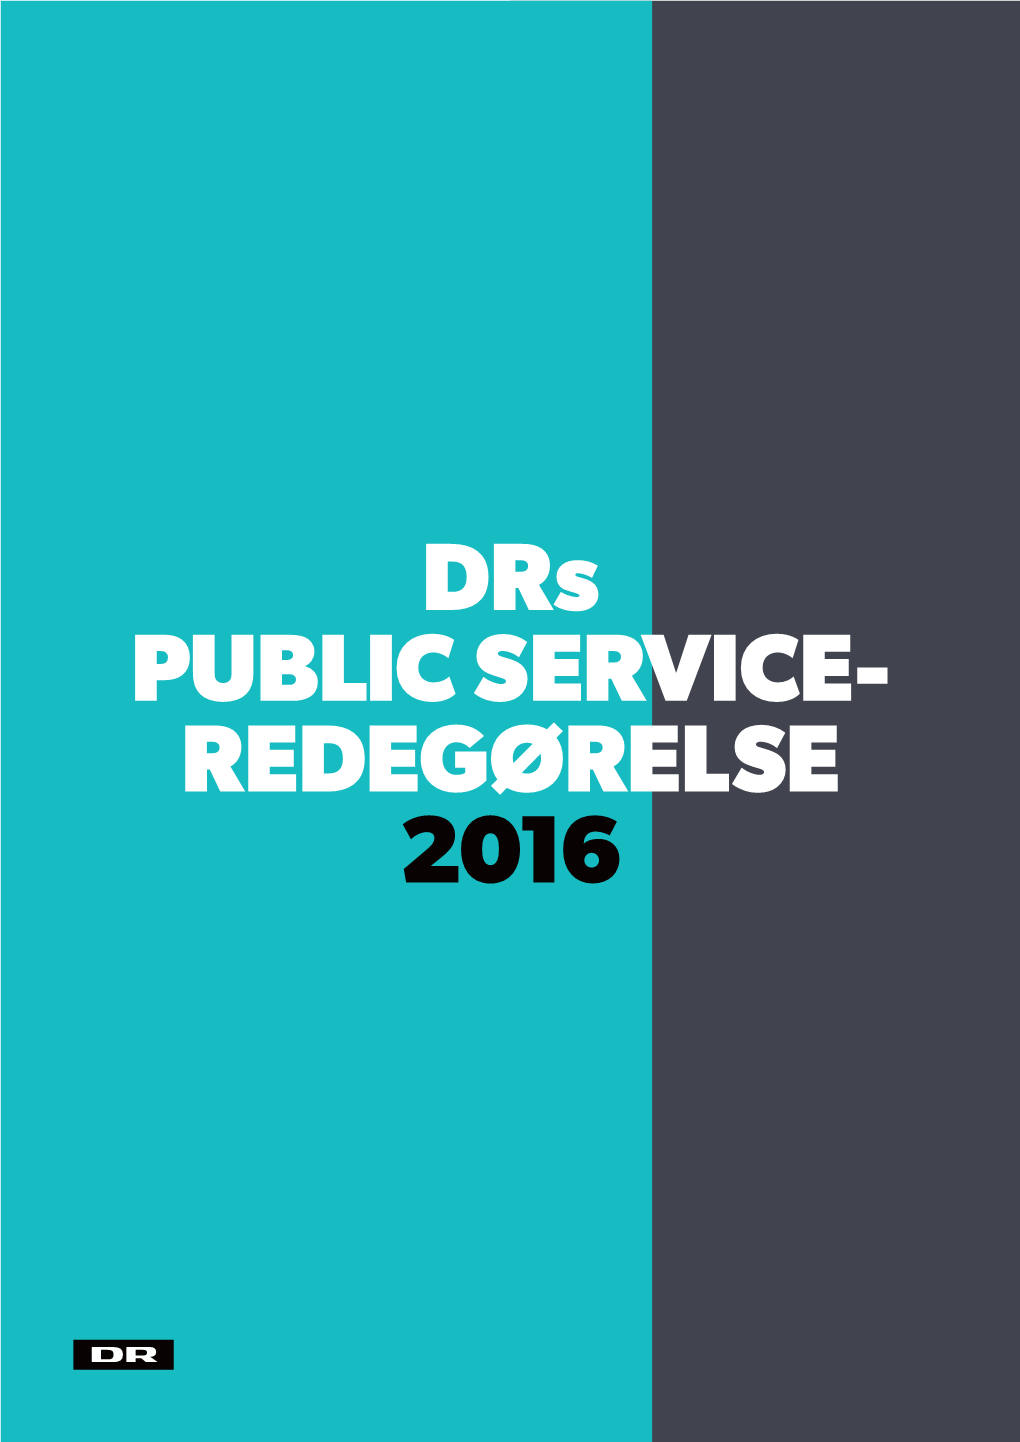 Drs PUBLIC SERVICE- REDEGØRELSE 2016